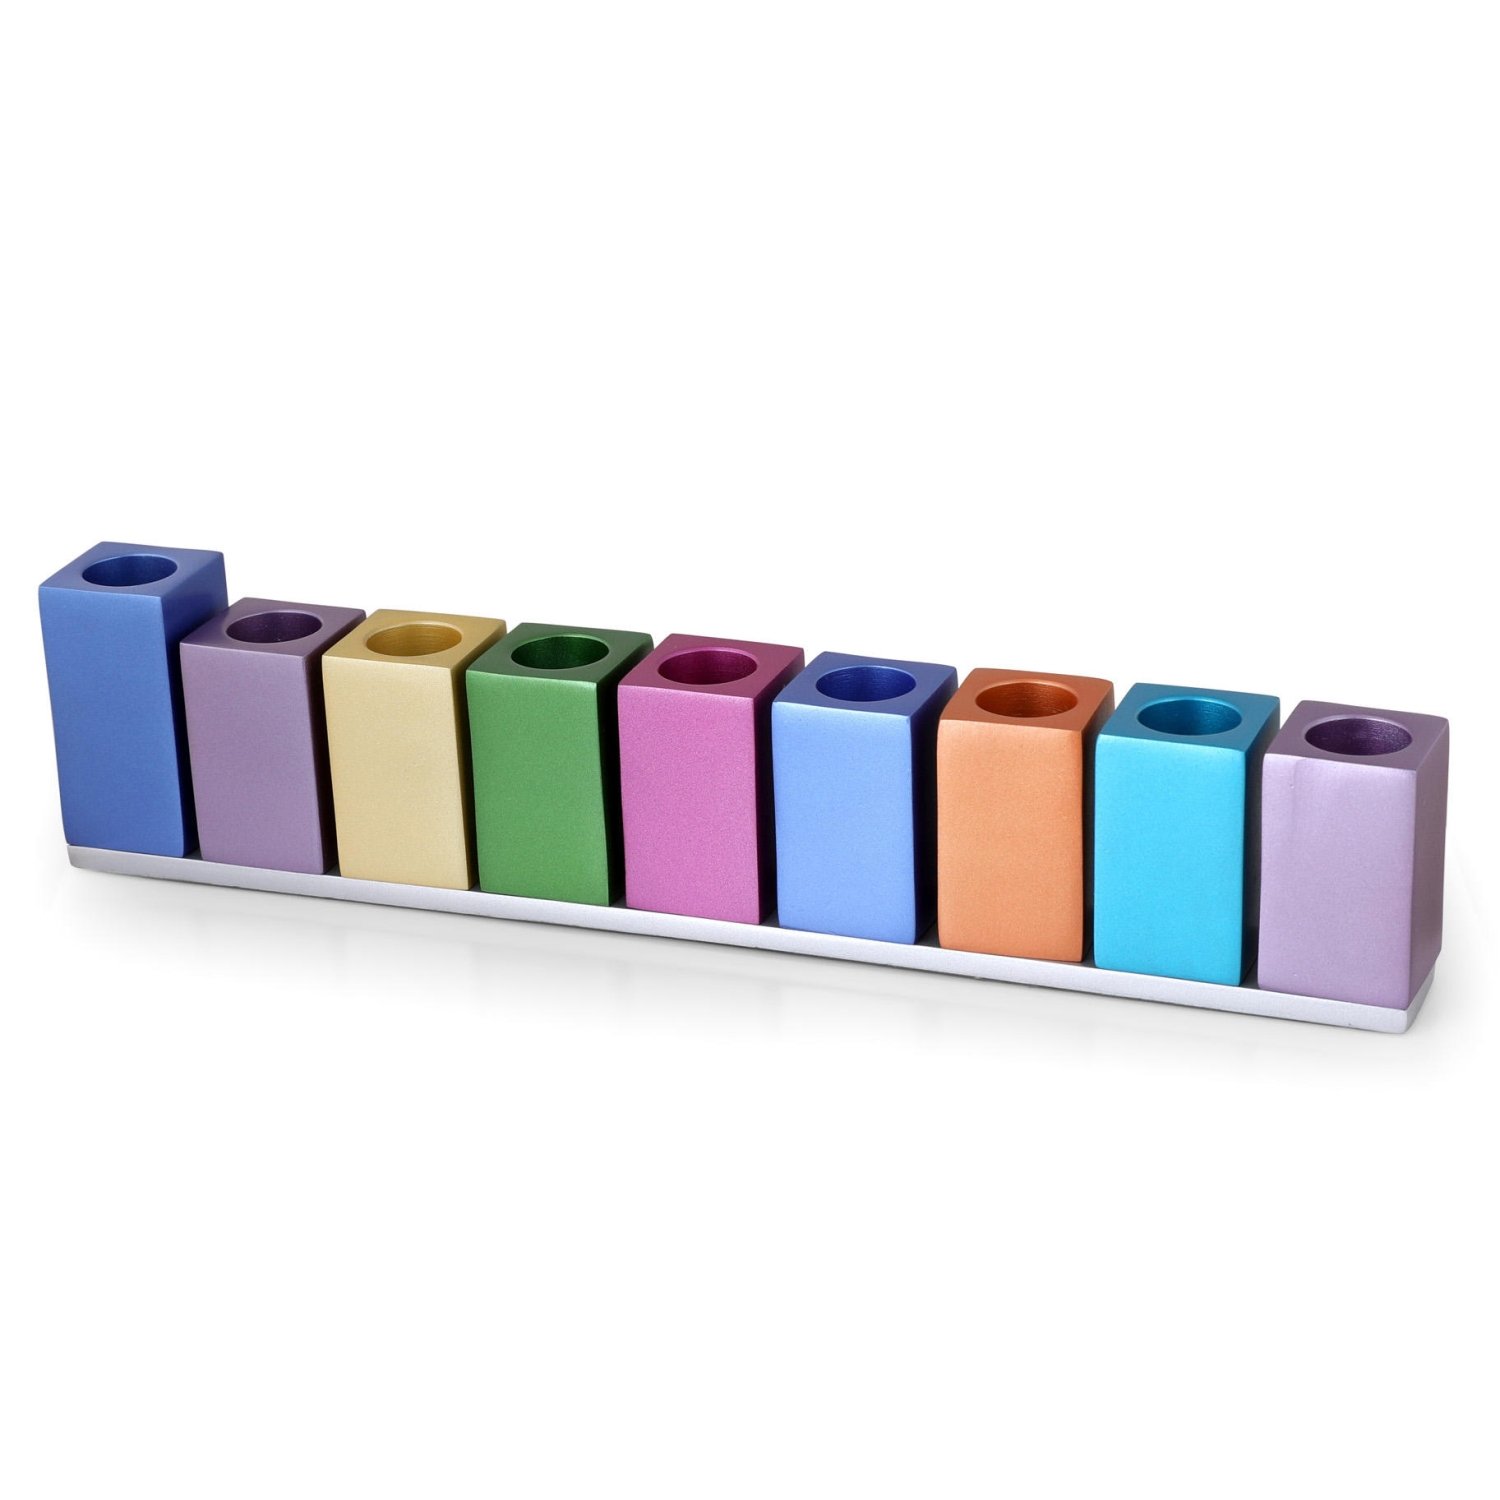 Yair Emanuel Anodized Aluminum Cubes Hanukkah Menorah (Choice of Colors) - 1